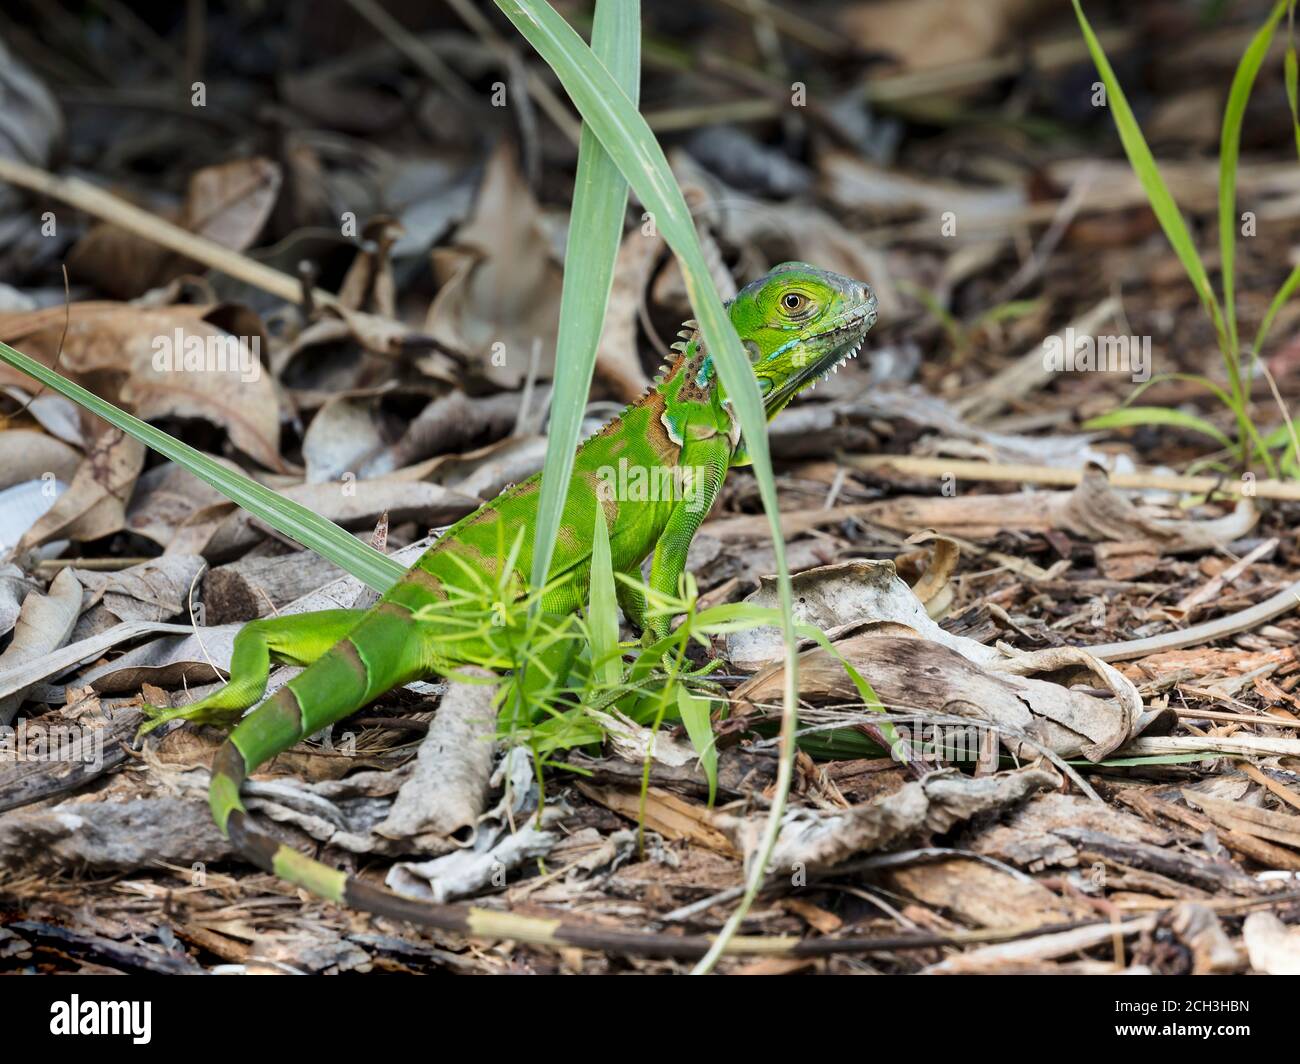 La iguana verde se arrastra en el suelo del bosque, Fort Lauderdale, Florida, Estados Unidos Foto de stock